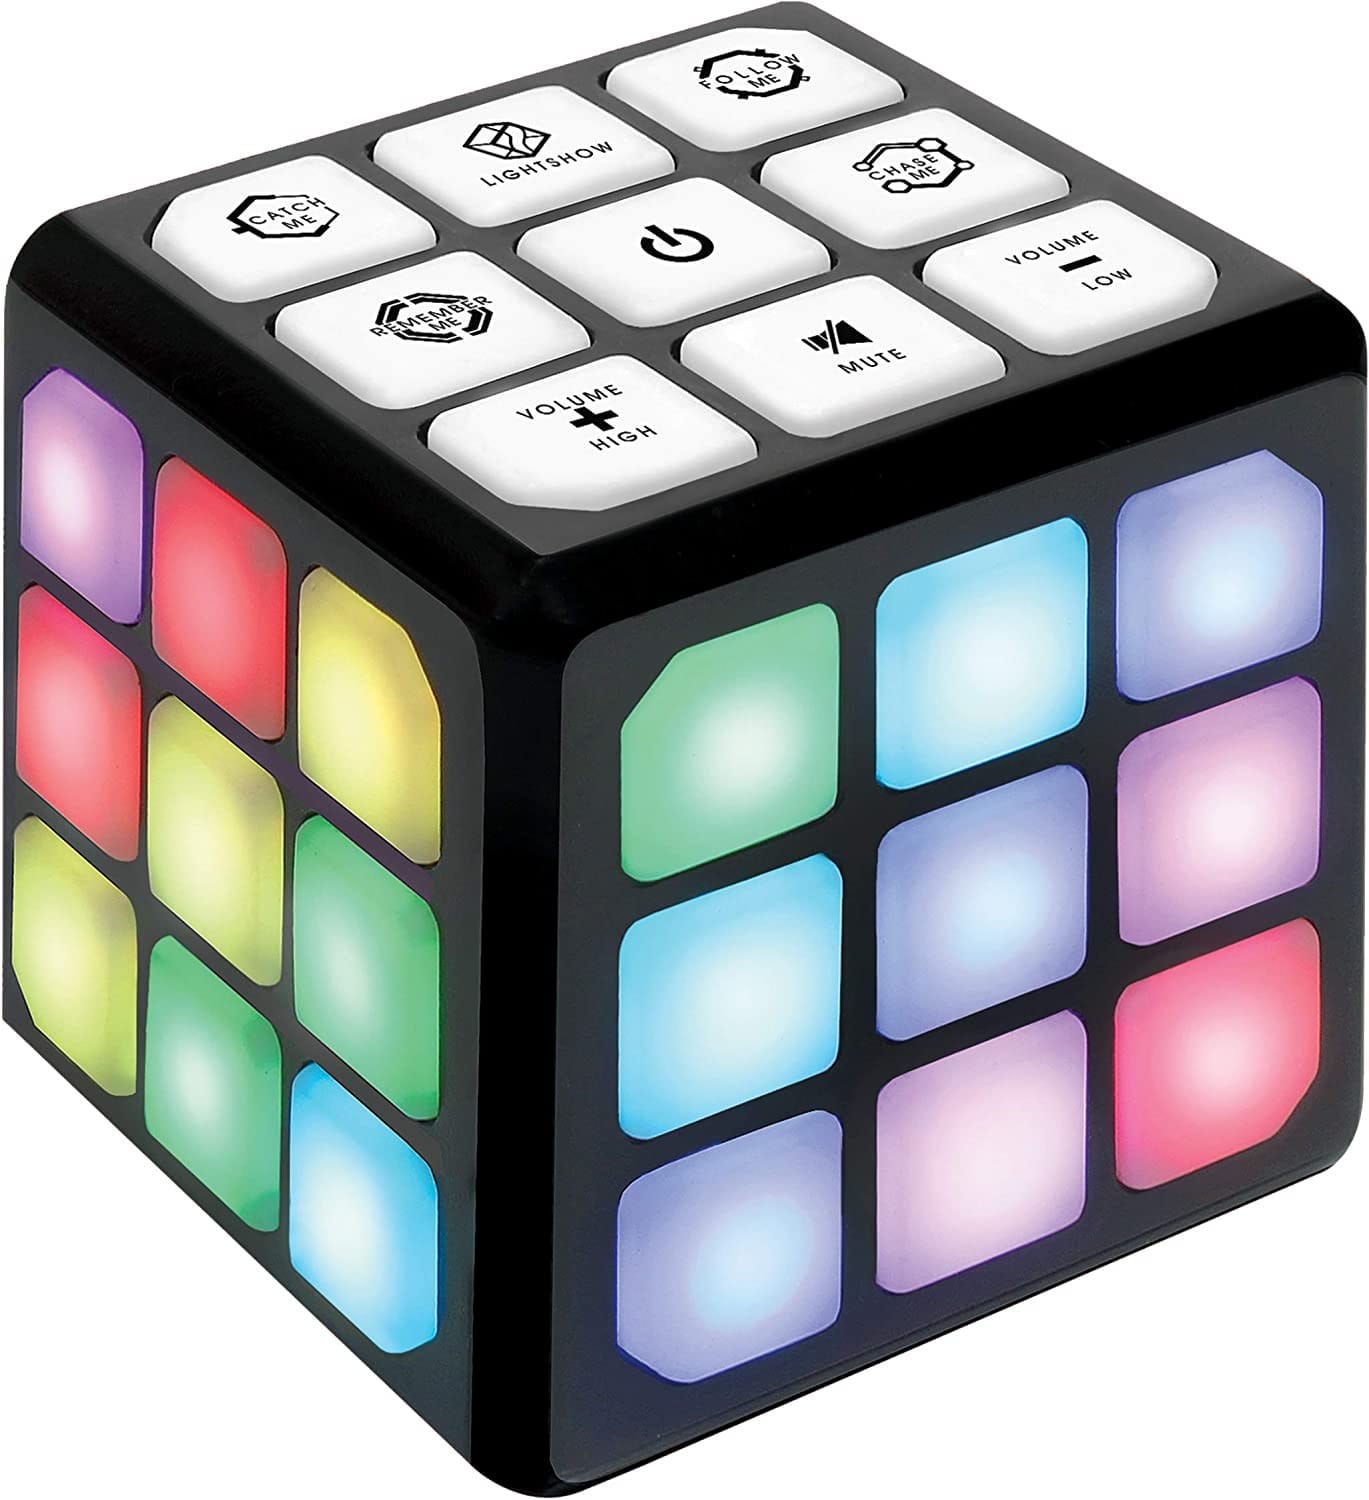 Winning Fingers Flashing Cube Electronic Memory Game & Brain Game